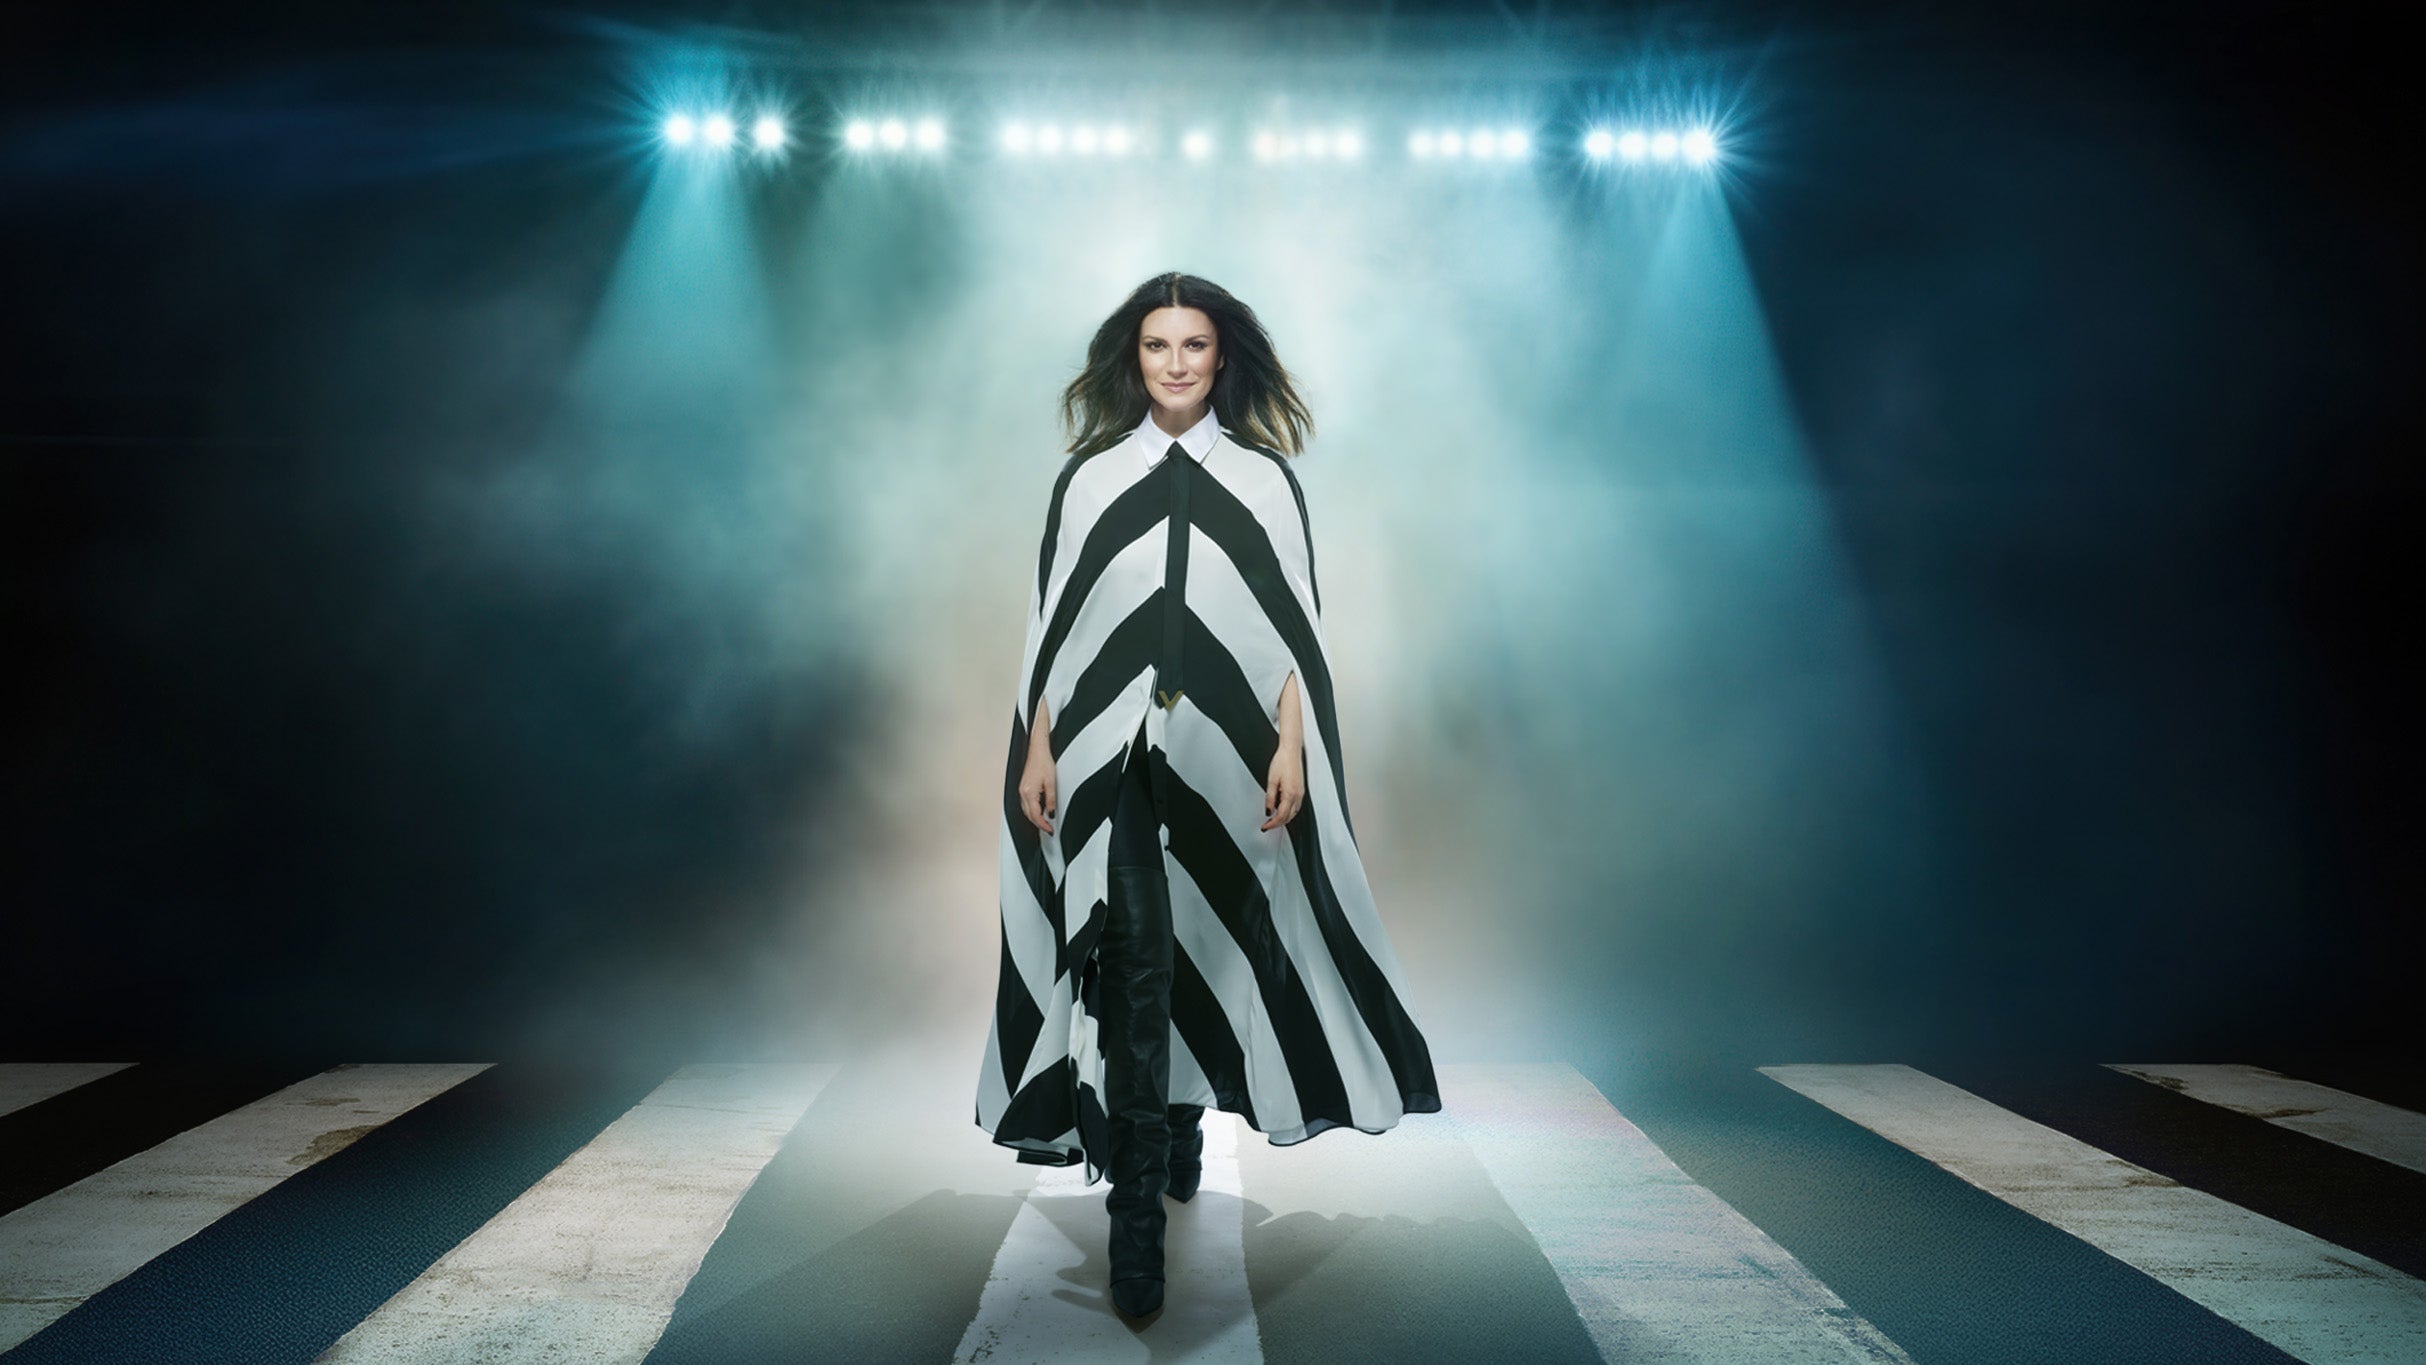 Laura Pausini World Tour 2023/2024 in Miami promo photo for Ticketmaster presale offer code